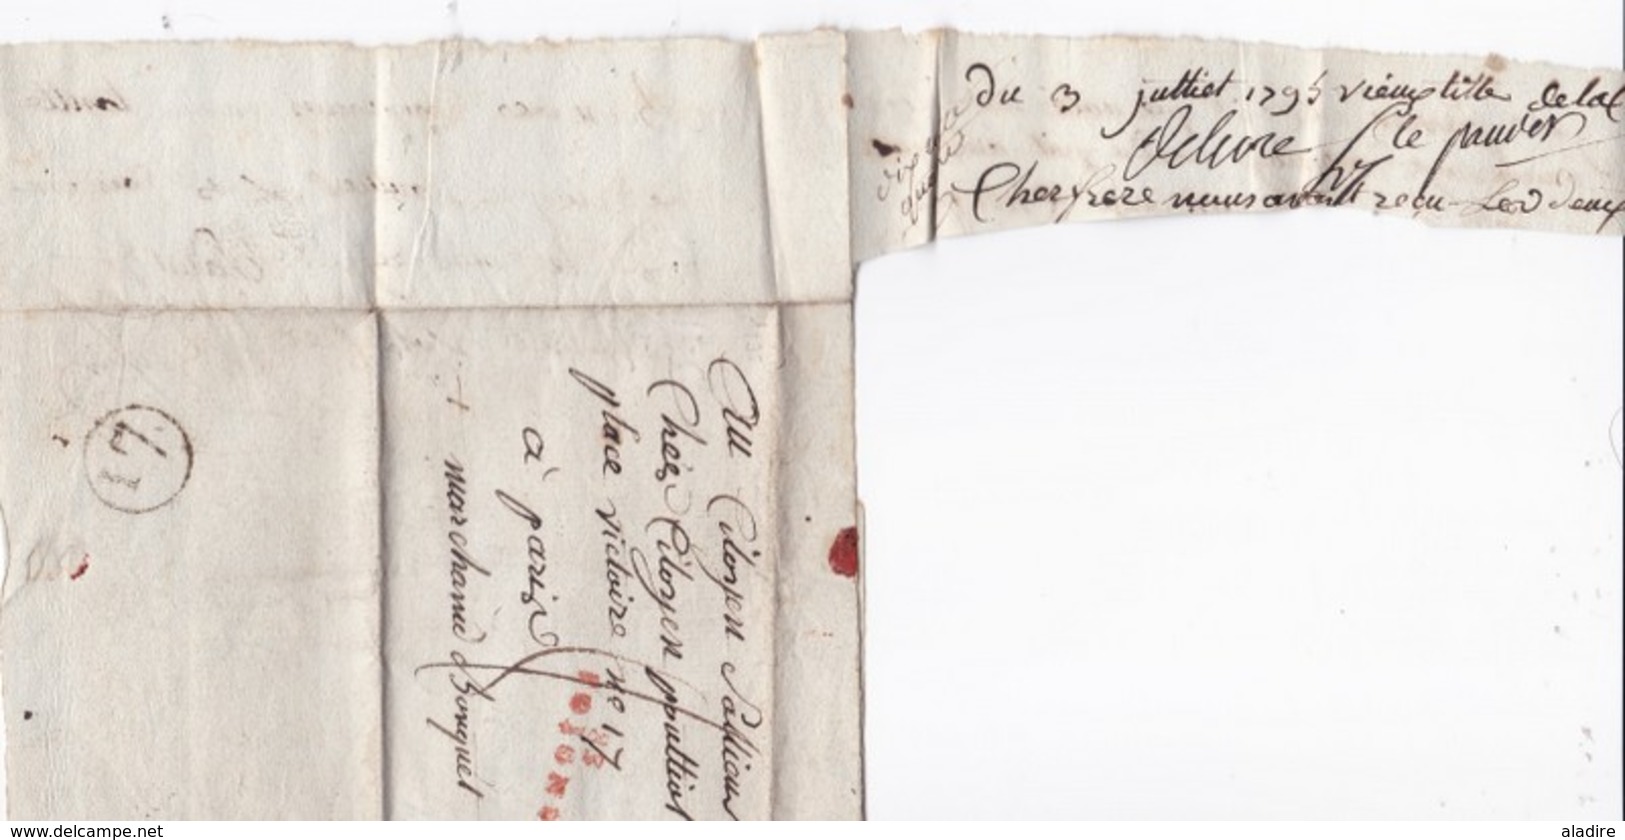 1795 - Marque Postale  en rouge 83 JOIGNY, Yonne  sur lettre avec correspondance vers Paris - cachet à date d'arrivée